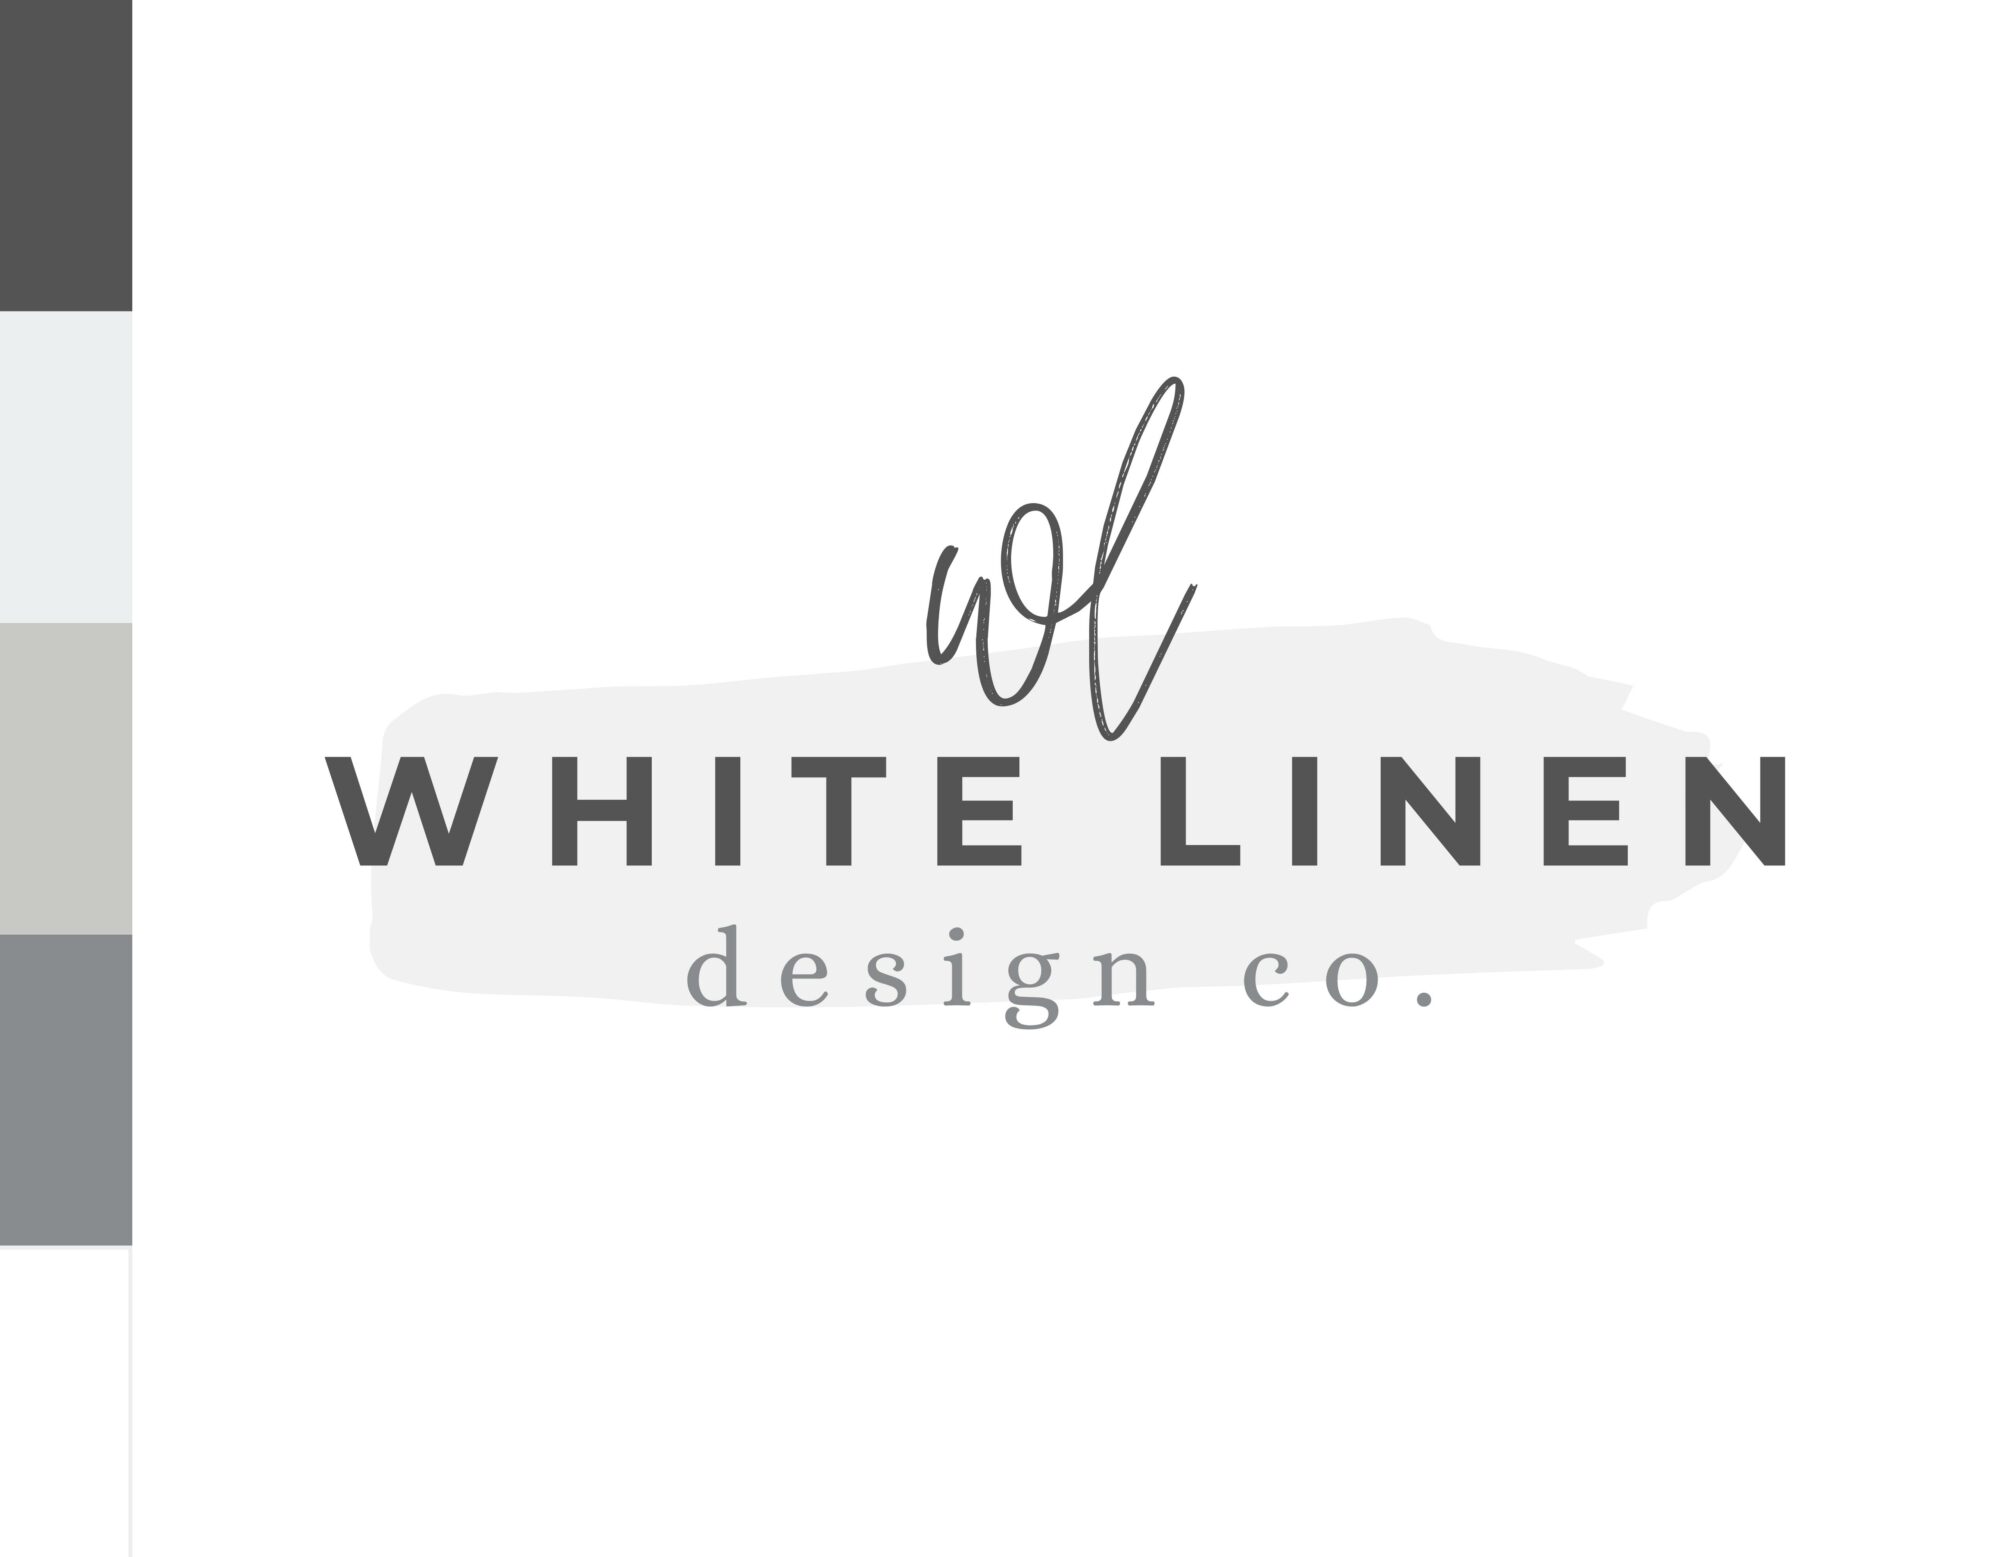 Editable Logo – White Linen